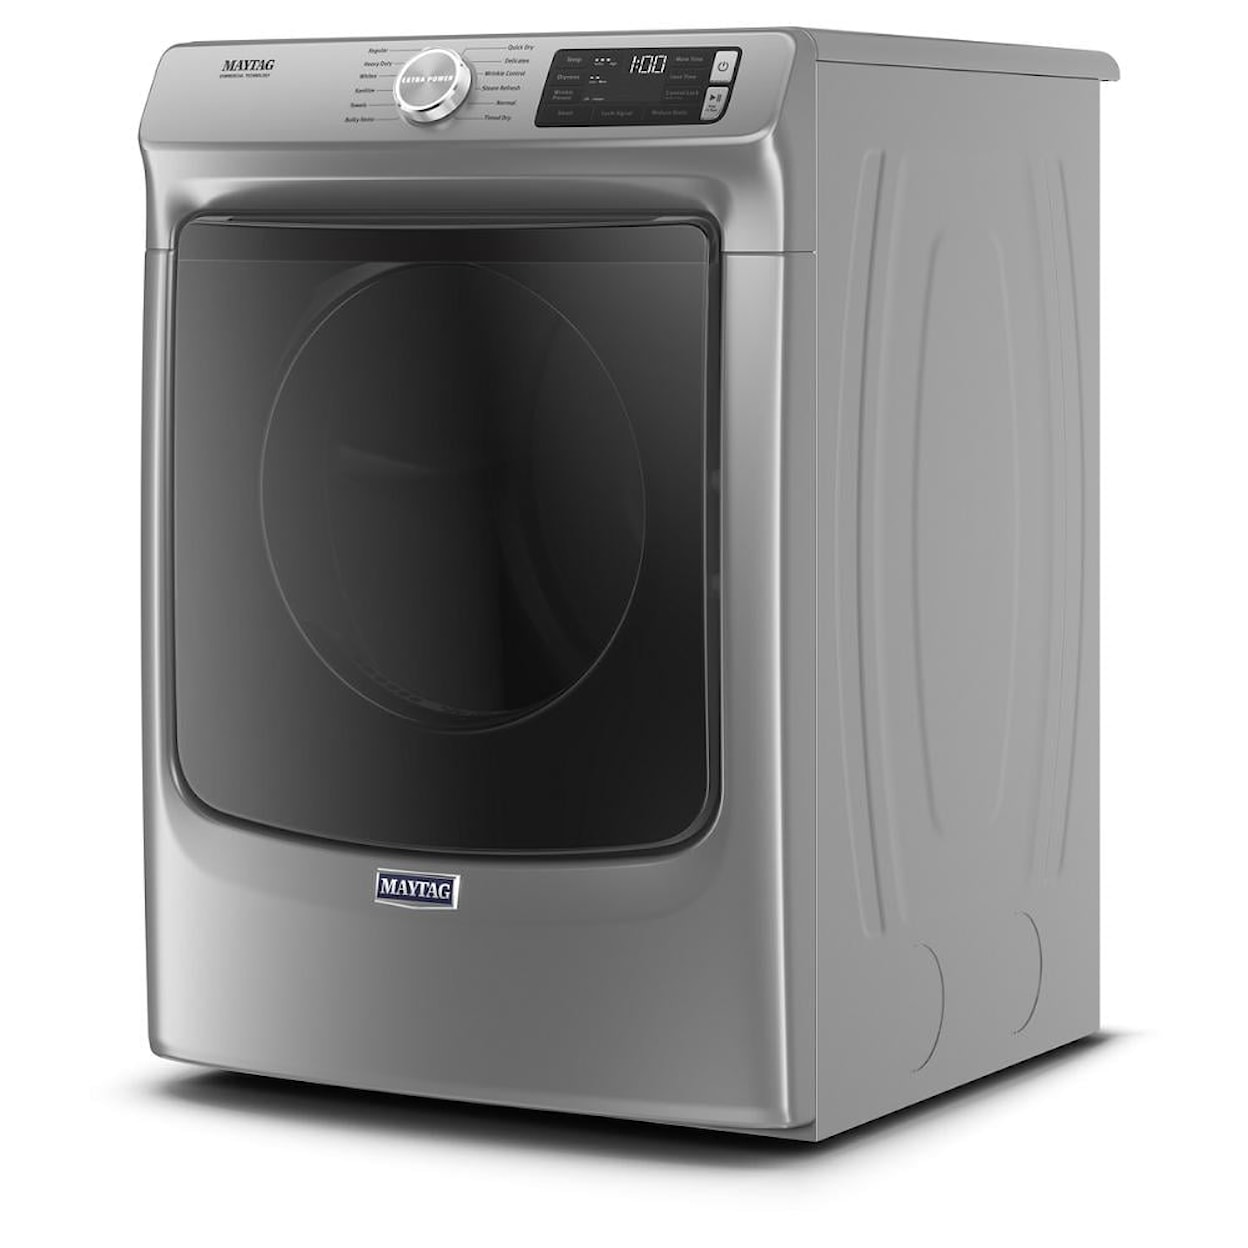 Maytag Laundry Dryer